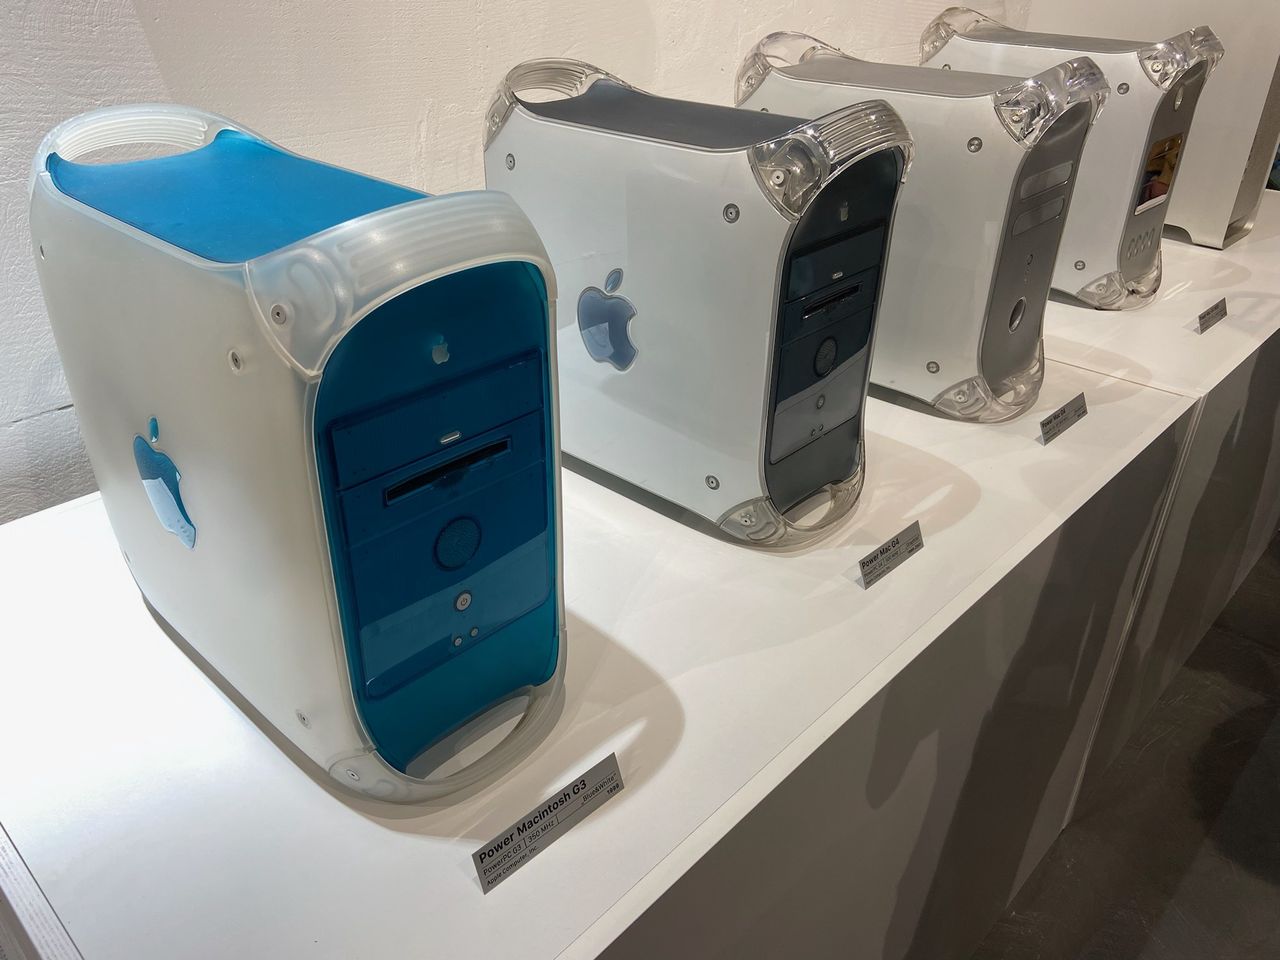 Kto nie marzył o Power Macintoshu?